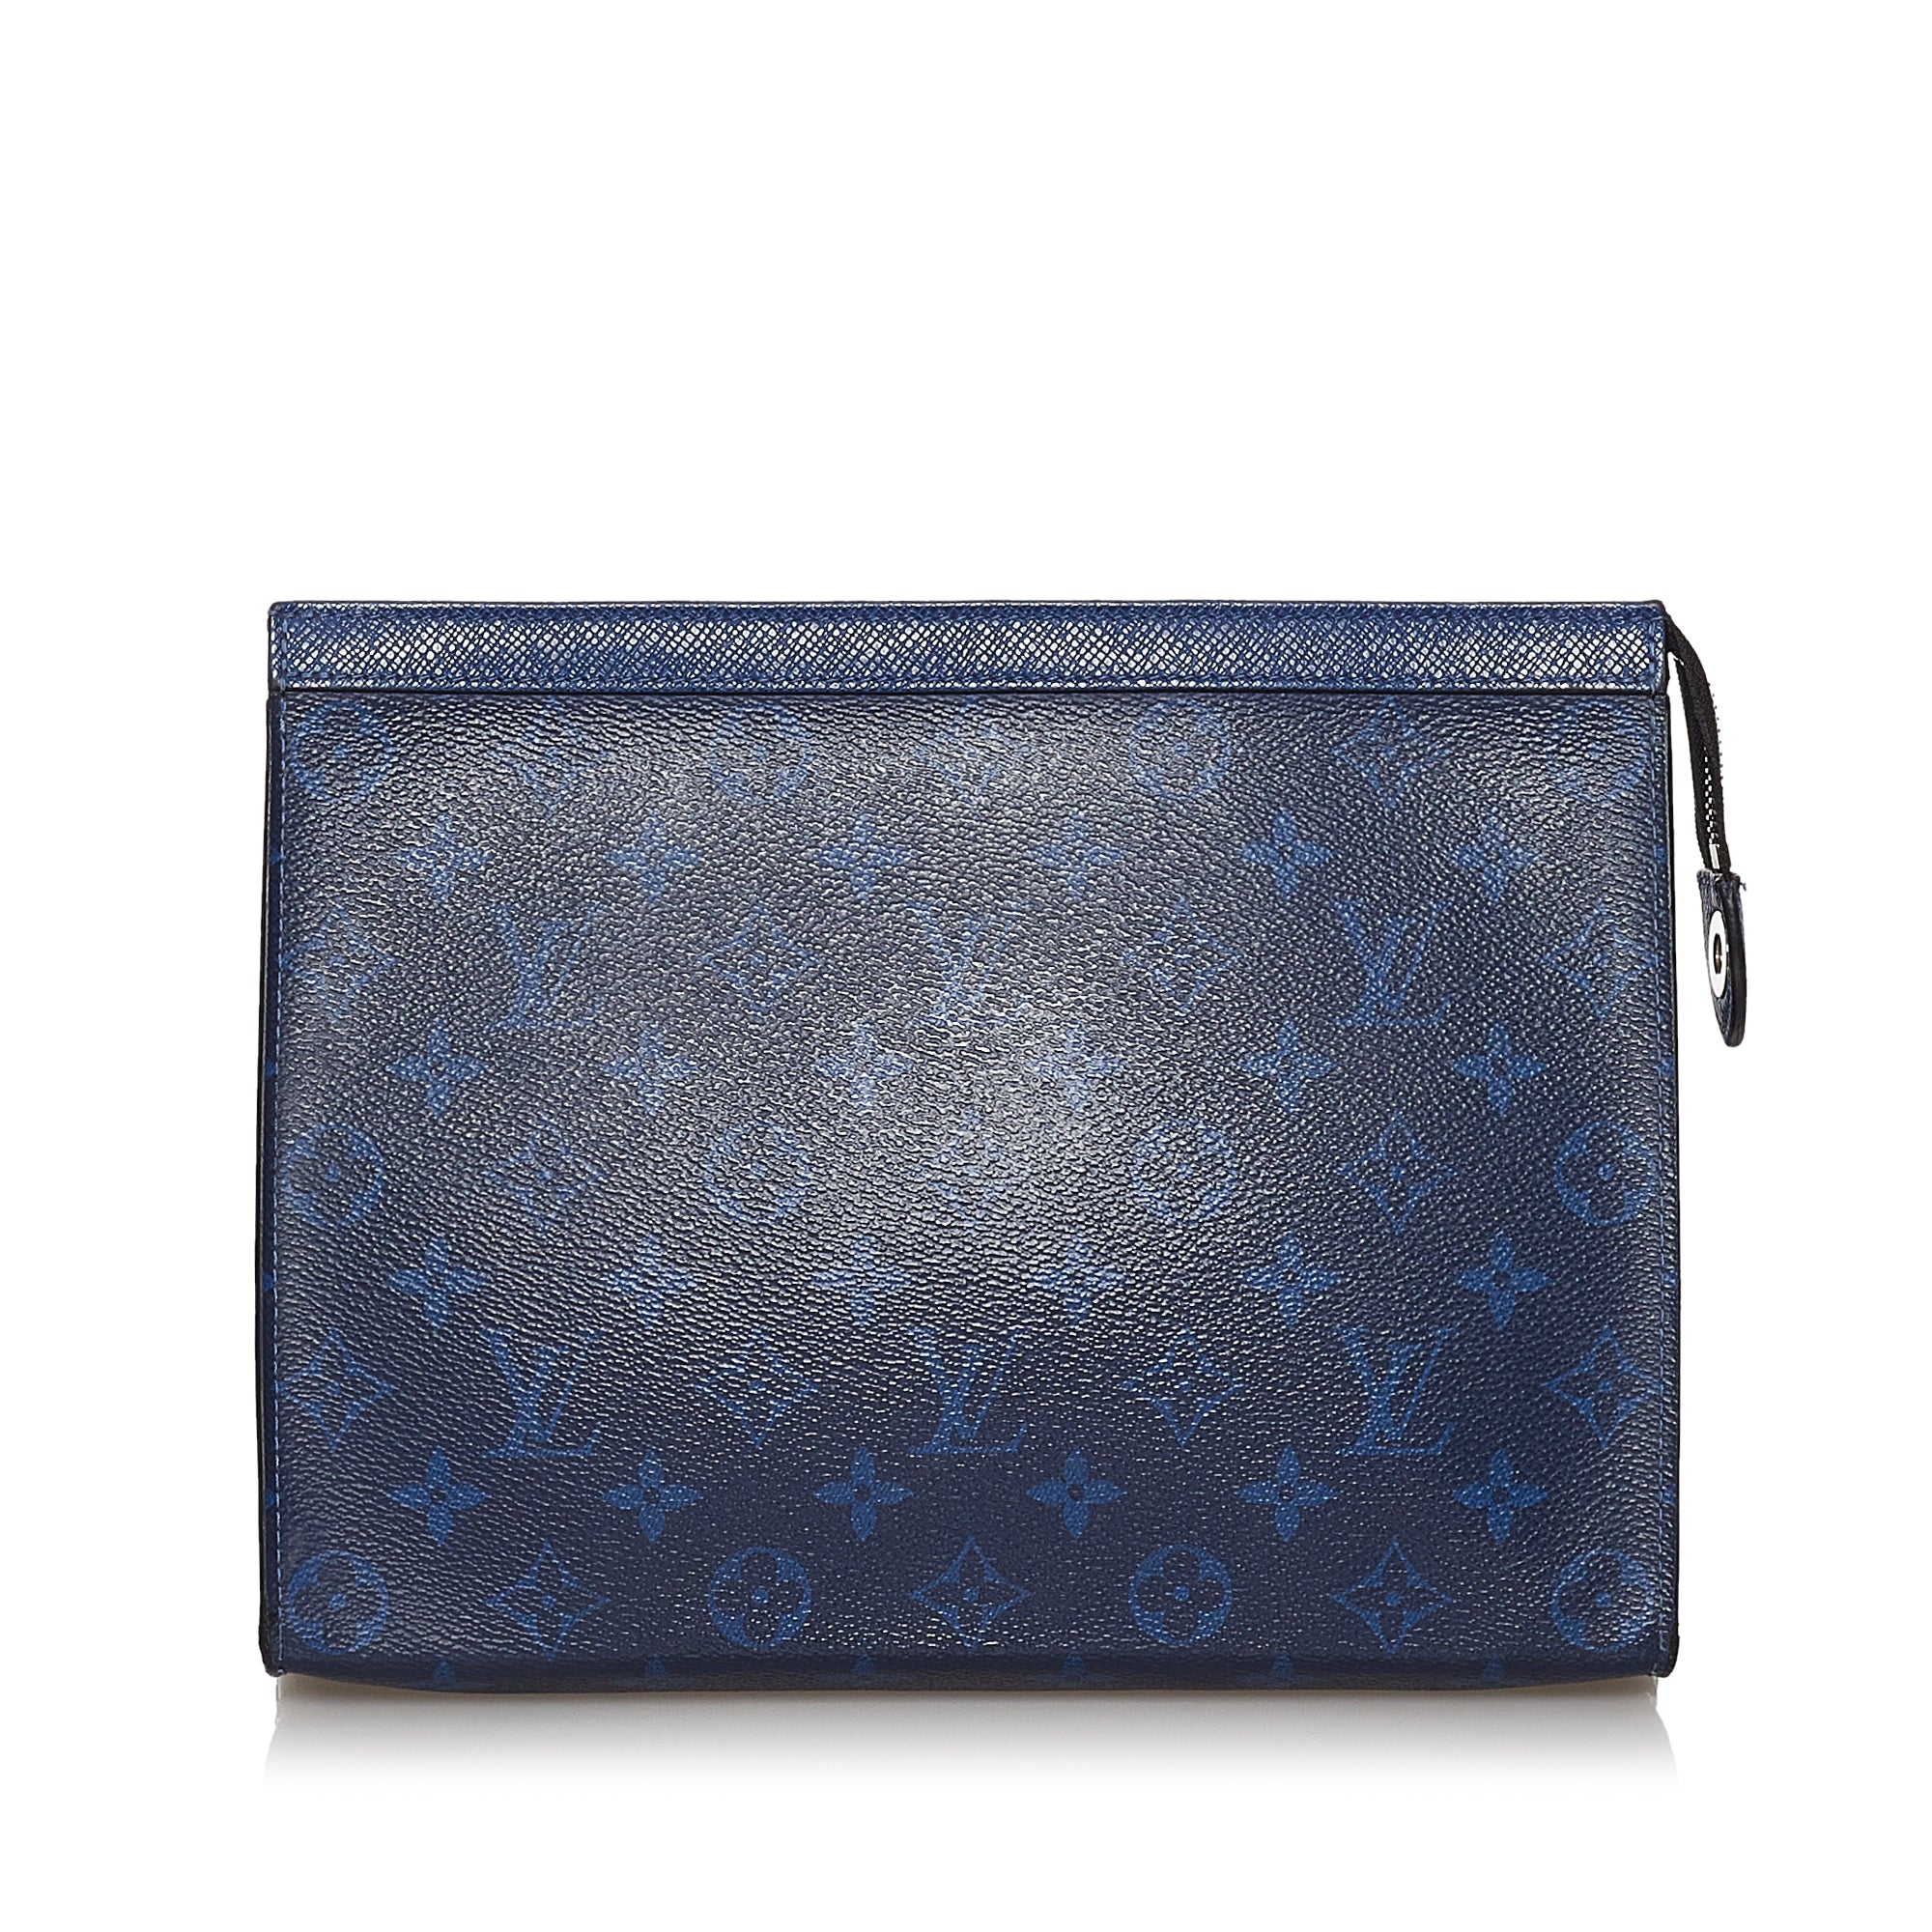 Louis Vuitton Fleur de Monogram LV Logo Bag Charm M67119, Cra-wallonieShops Revival